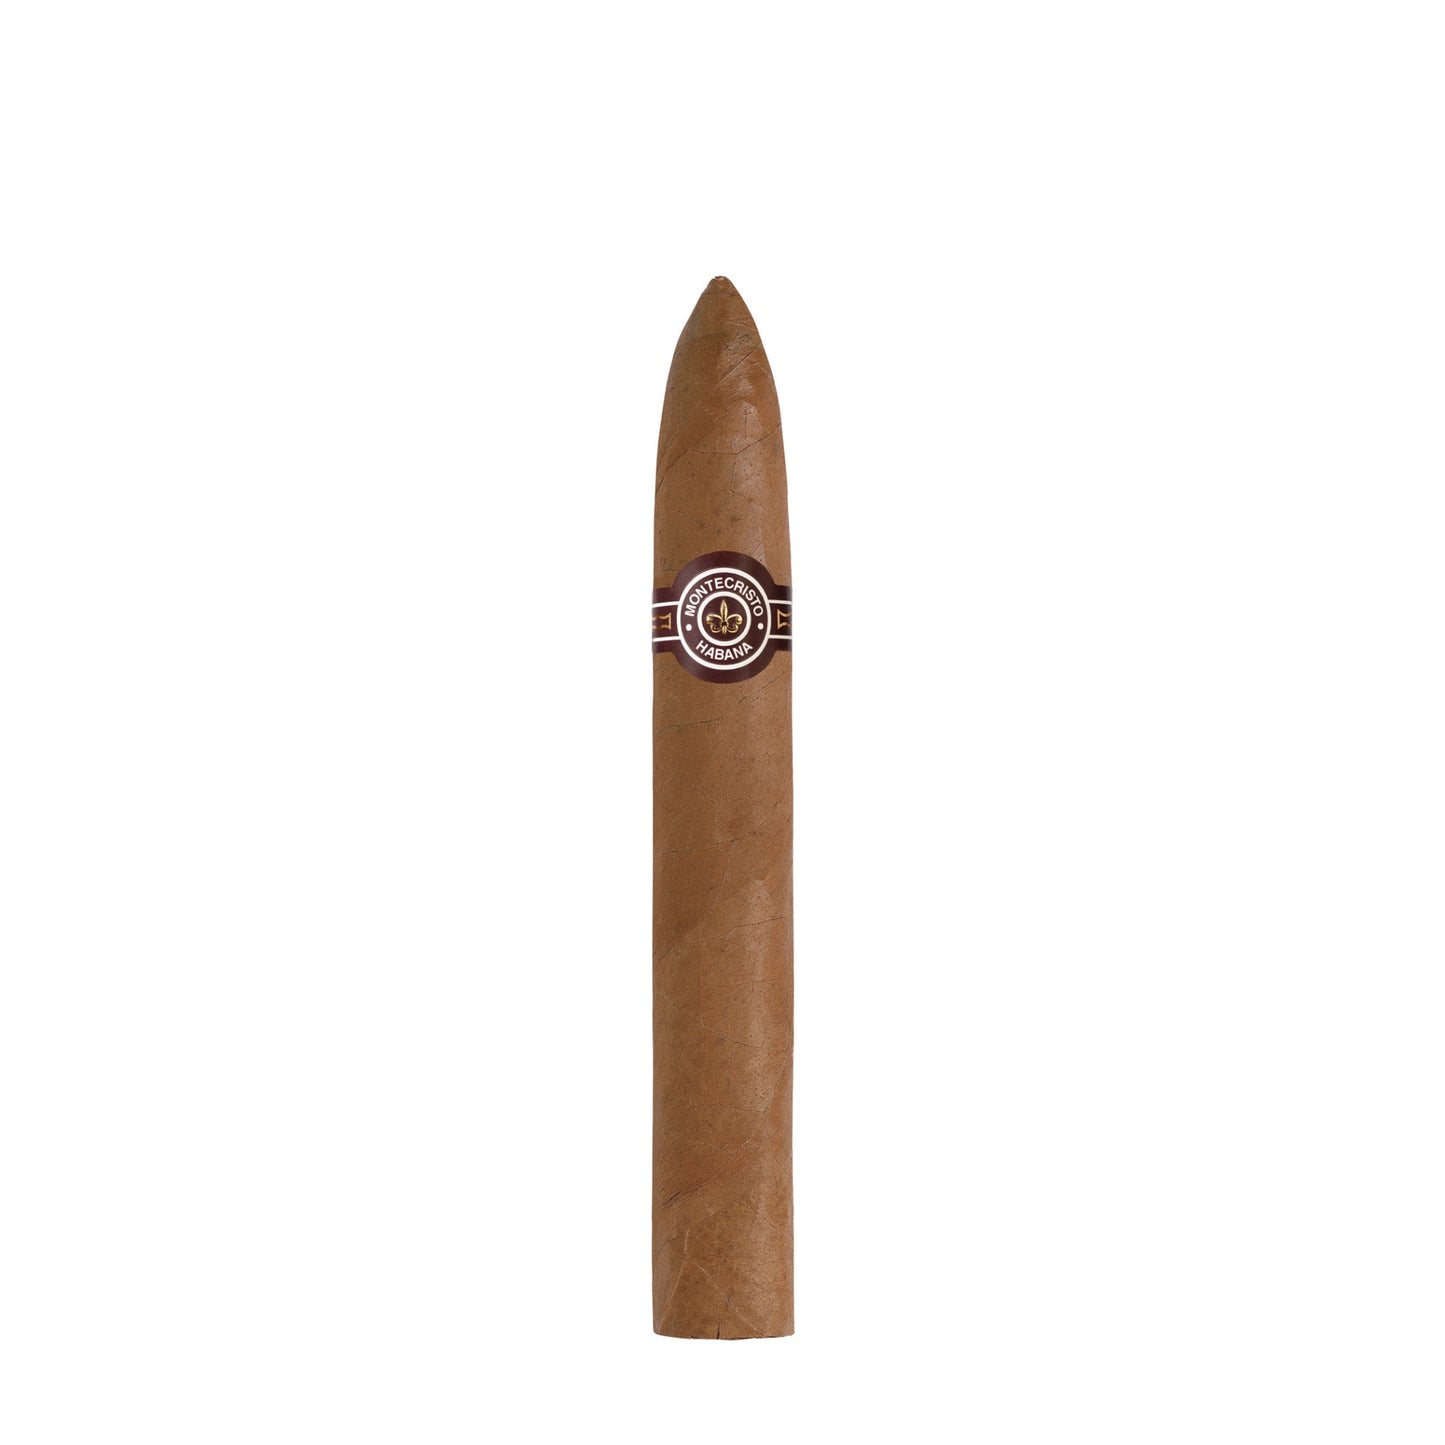 Montecristo No. 2 cigar